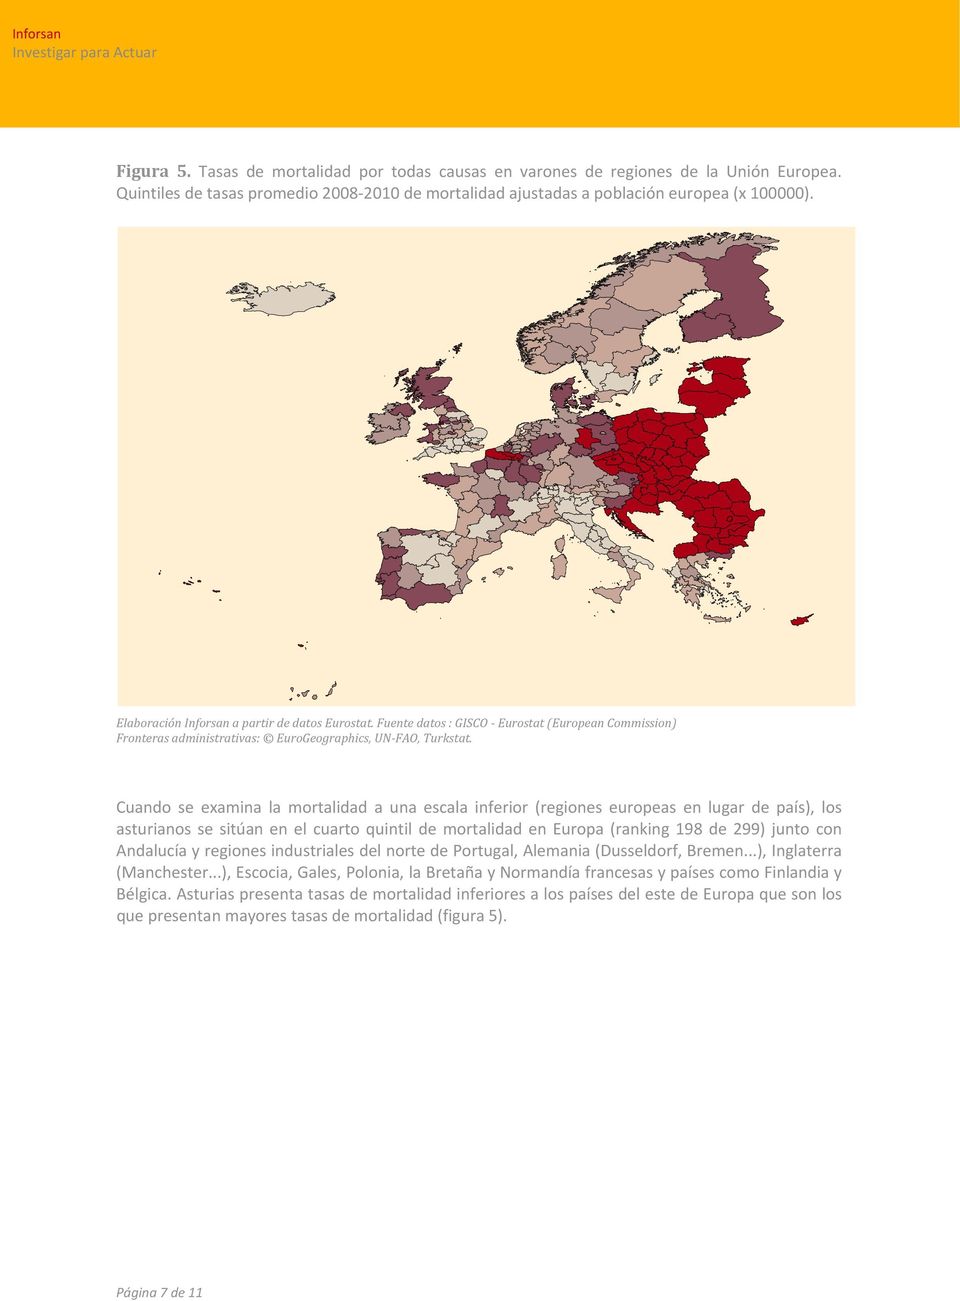 Cuando se examina la mortalidad a una escala inferior (regiones europeas en lugar de país), los asturianos se sitúan en el cuarto quintil de mortalidad en Europa (ranking 198 de 299) junto con